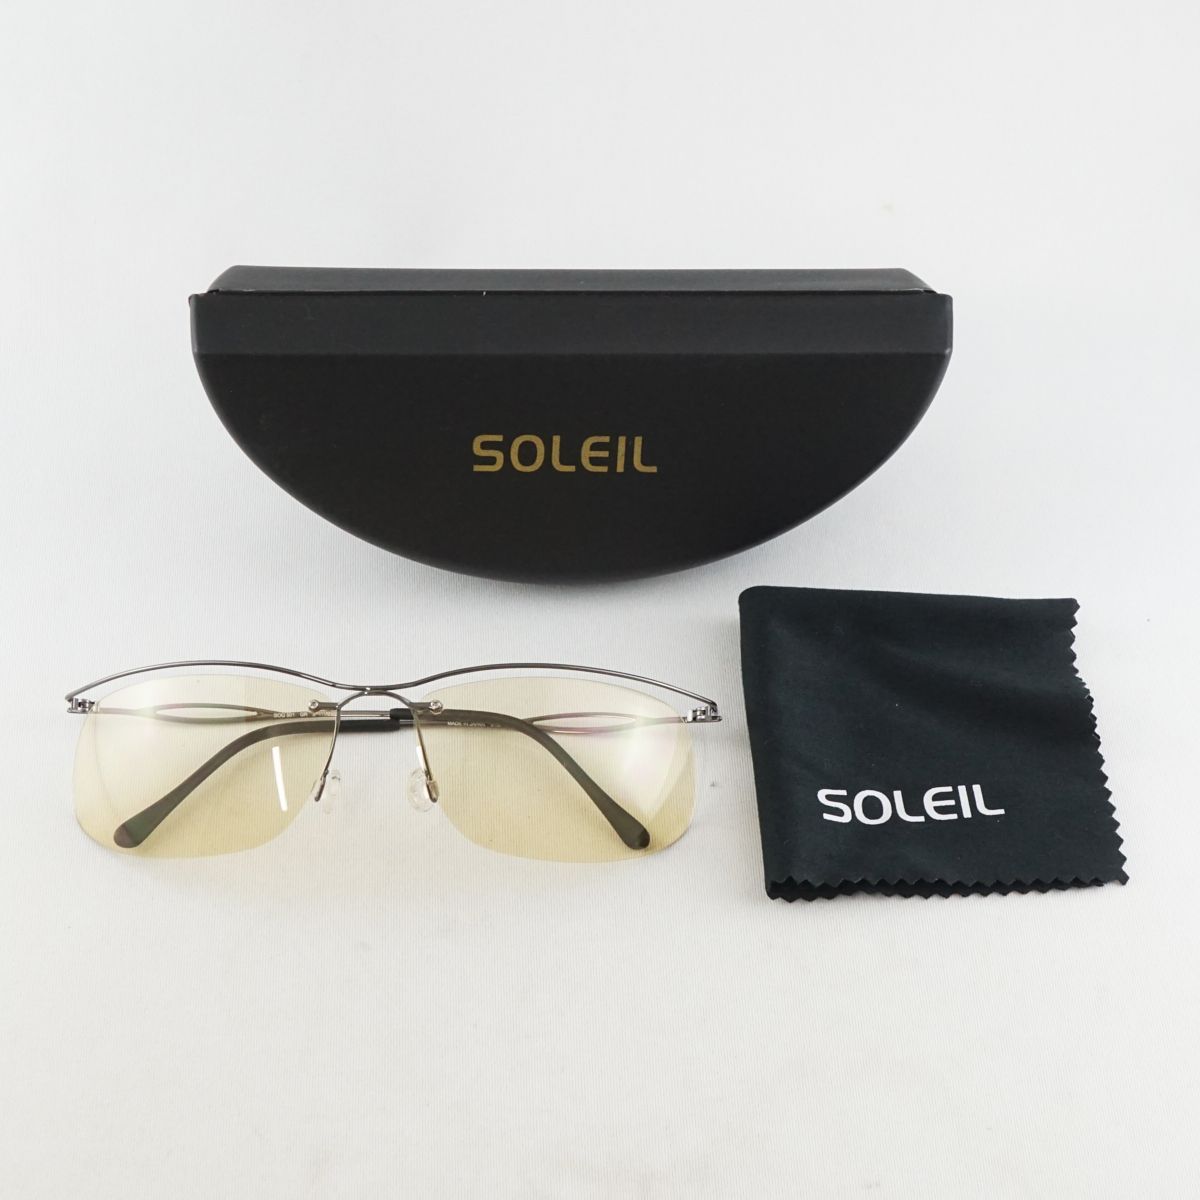 サングラス SOLEIL ソレイユ USED超美品 メラニーナ 薄色 SOG 501 軽量 